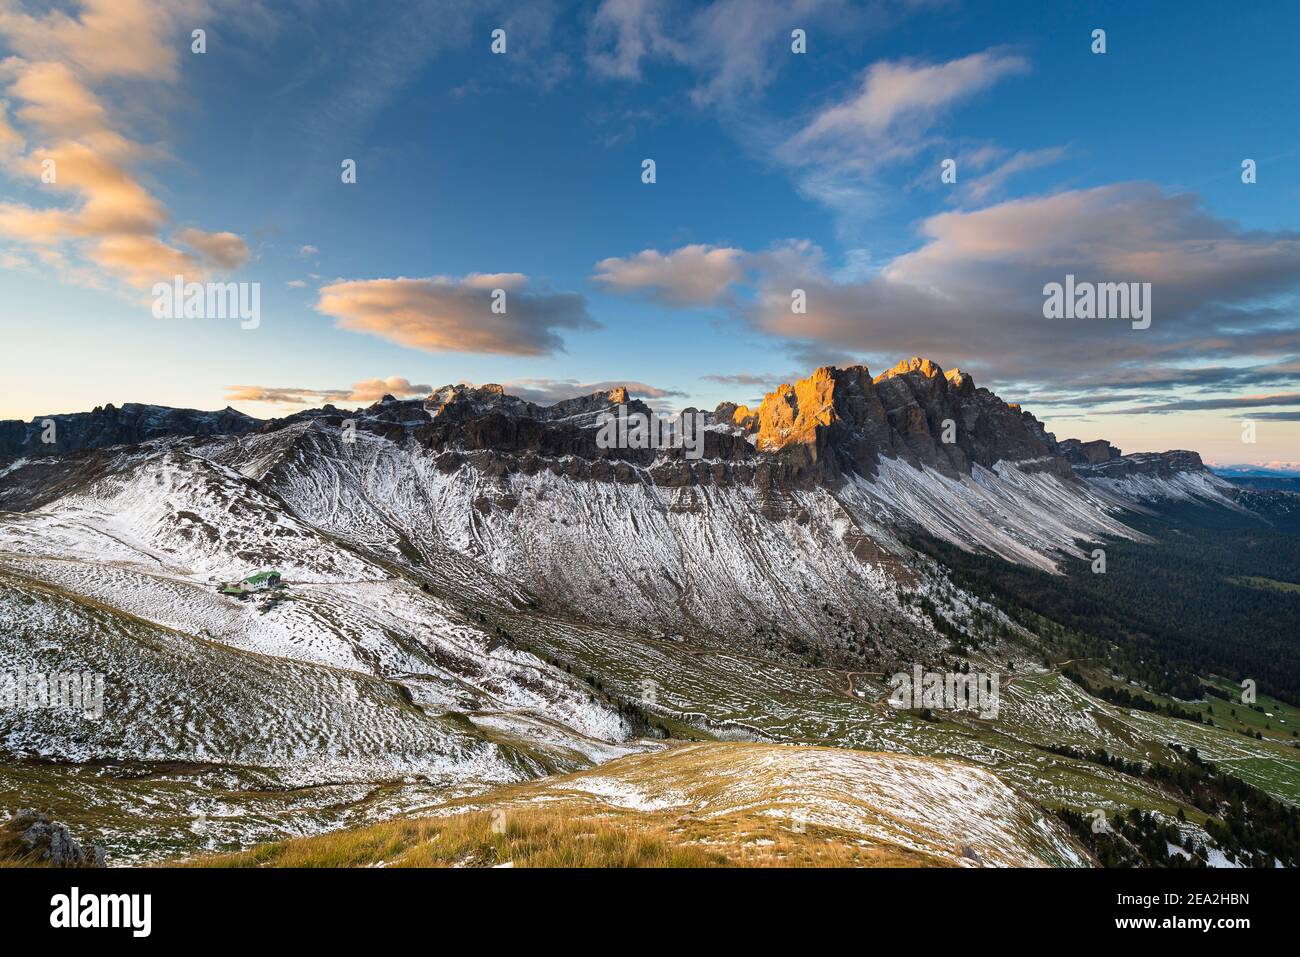 Les nuages, les falaises et les sommets des montagnes Puez-Odle brillent d'or au soleil au lever du soleil sur les Dolomites, vallée de Villnöß, Sout Tyrol, Italie Banque D'Images